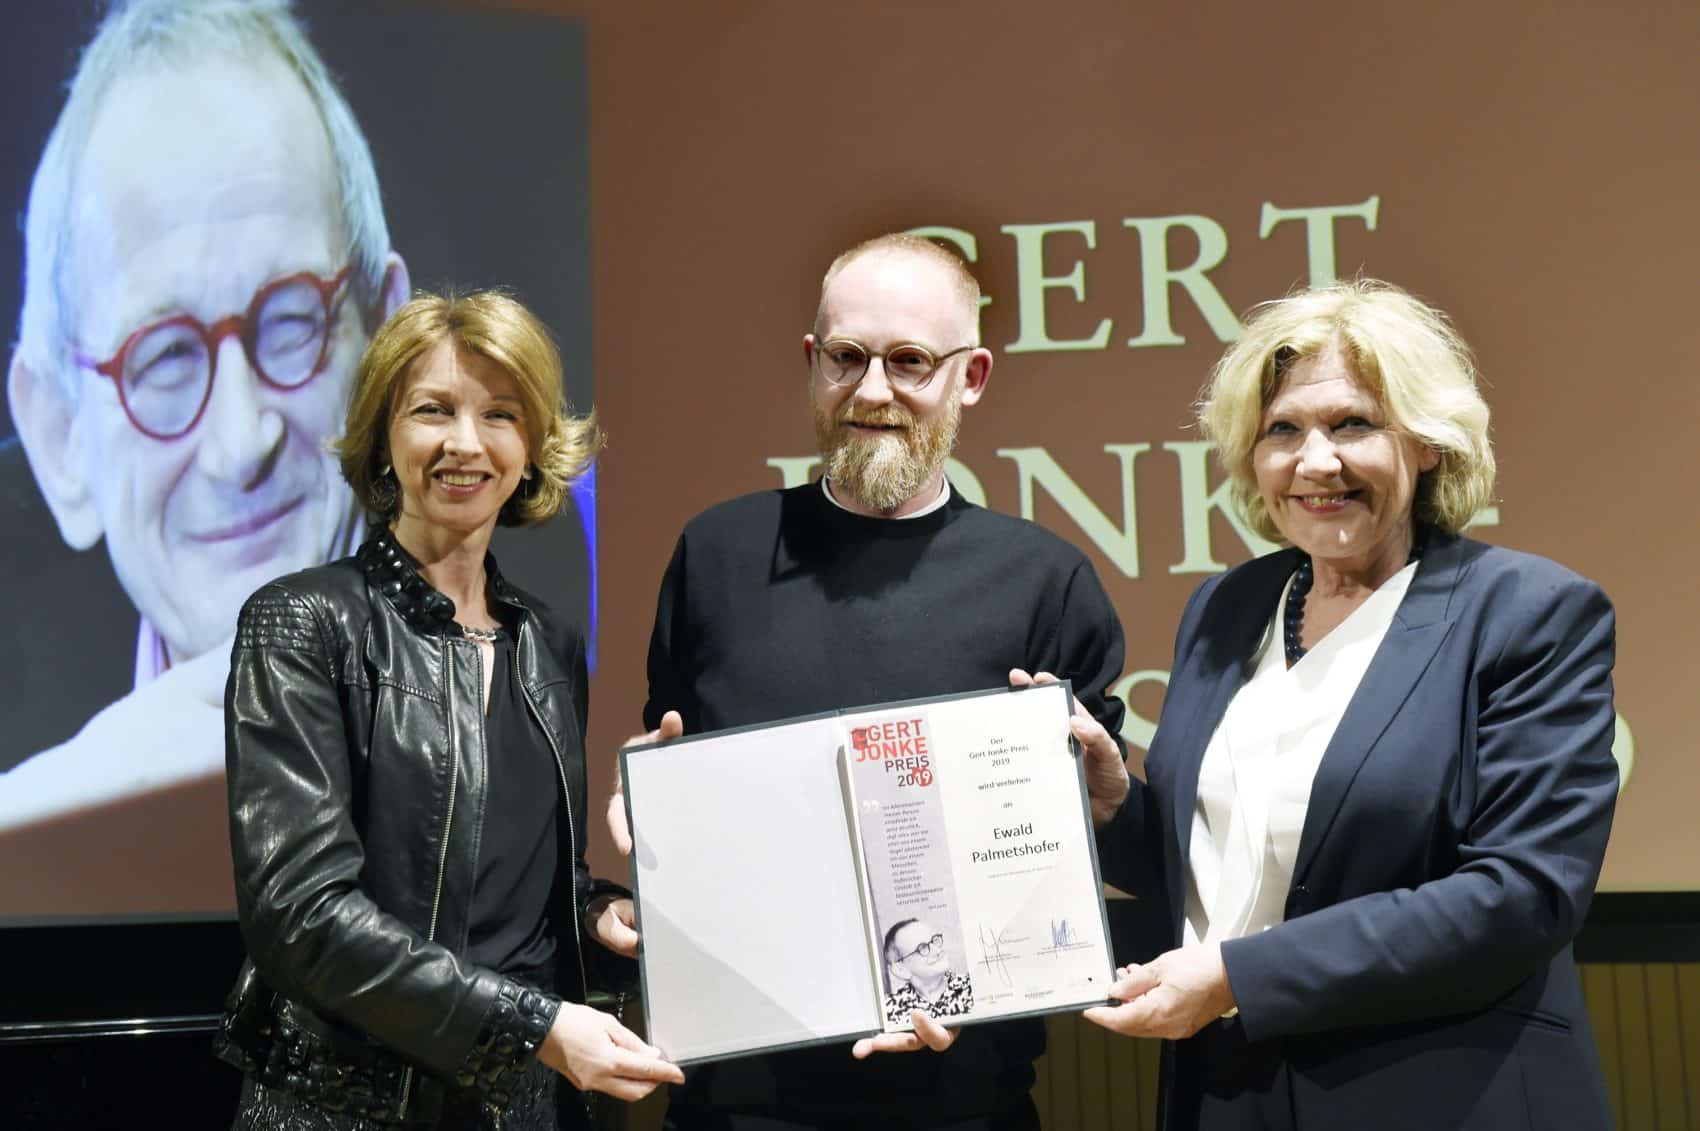 Bürgermeisterin Dr. Maria-Luise Mathiaschitz und Landeshauptmannstellvertreterin Dr. Gaby Schaunig gratulieren dem Gert-Jonke-Preisträger des Jahres 2019, Ewald Palmetshofer.